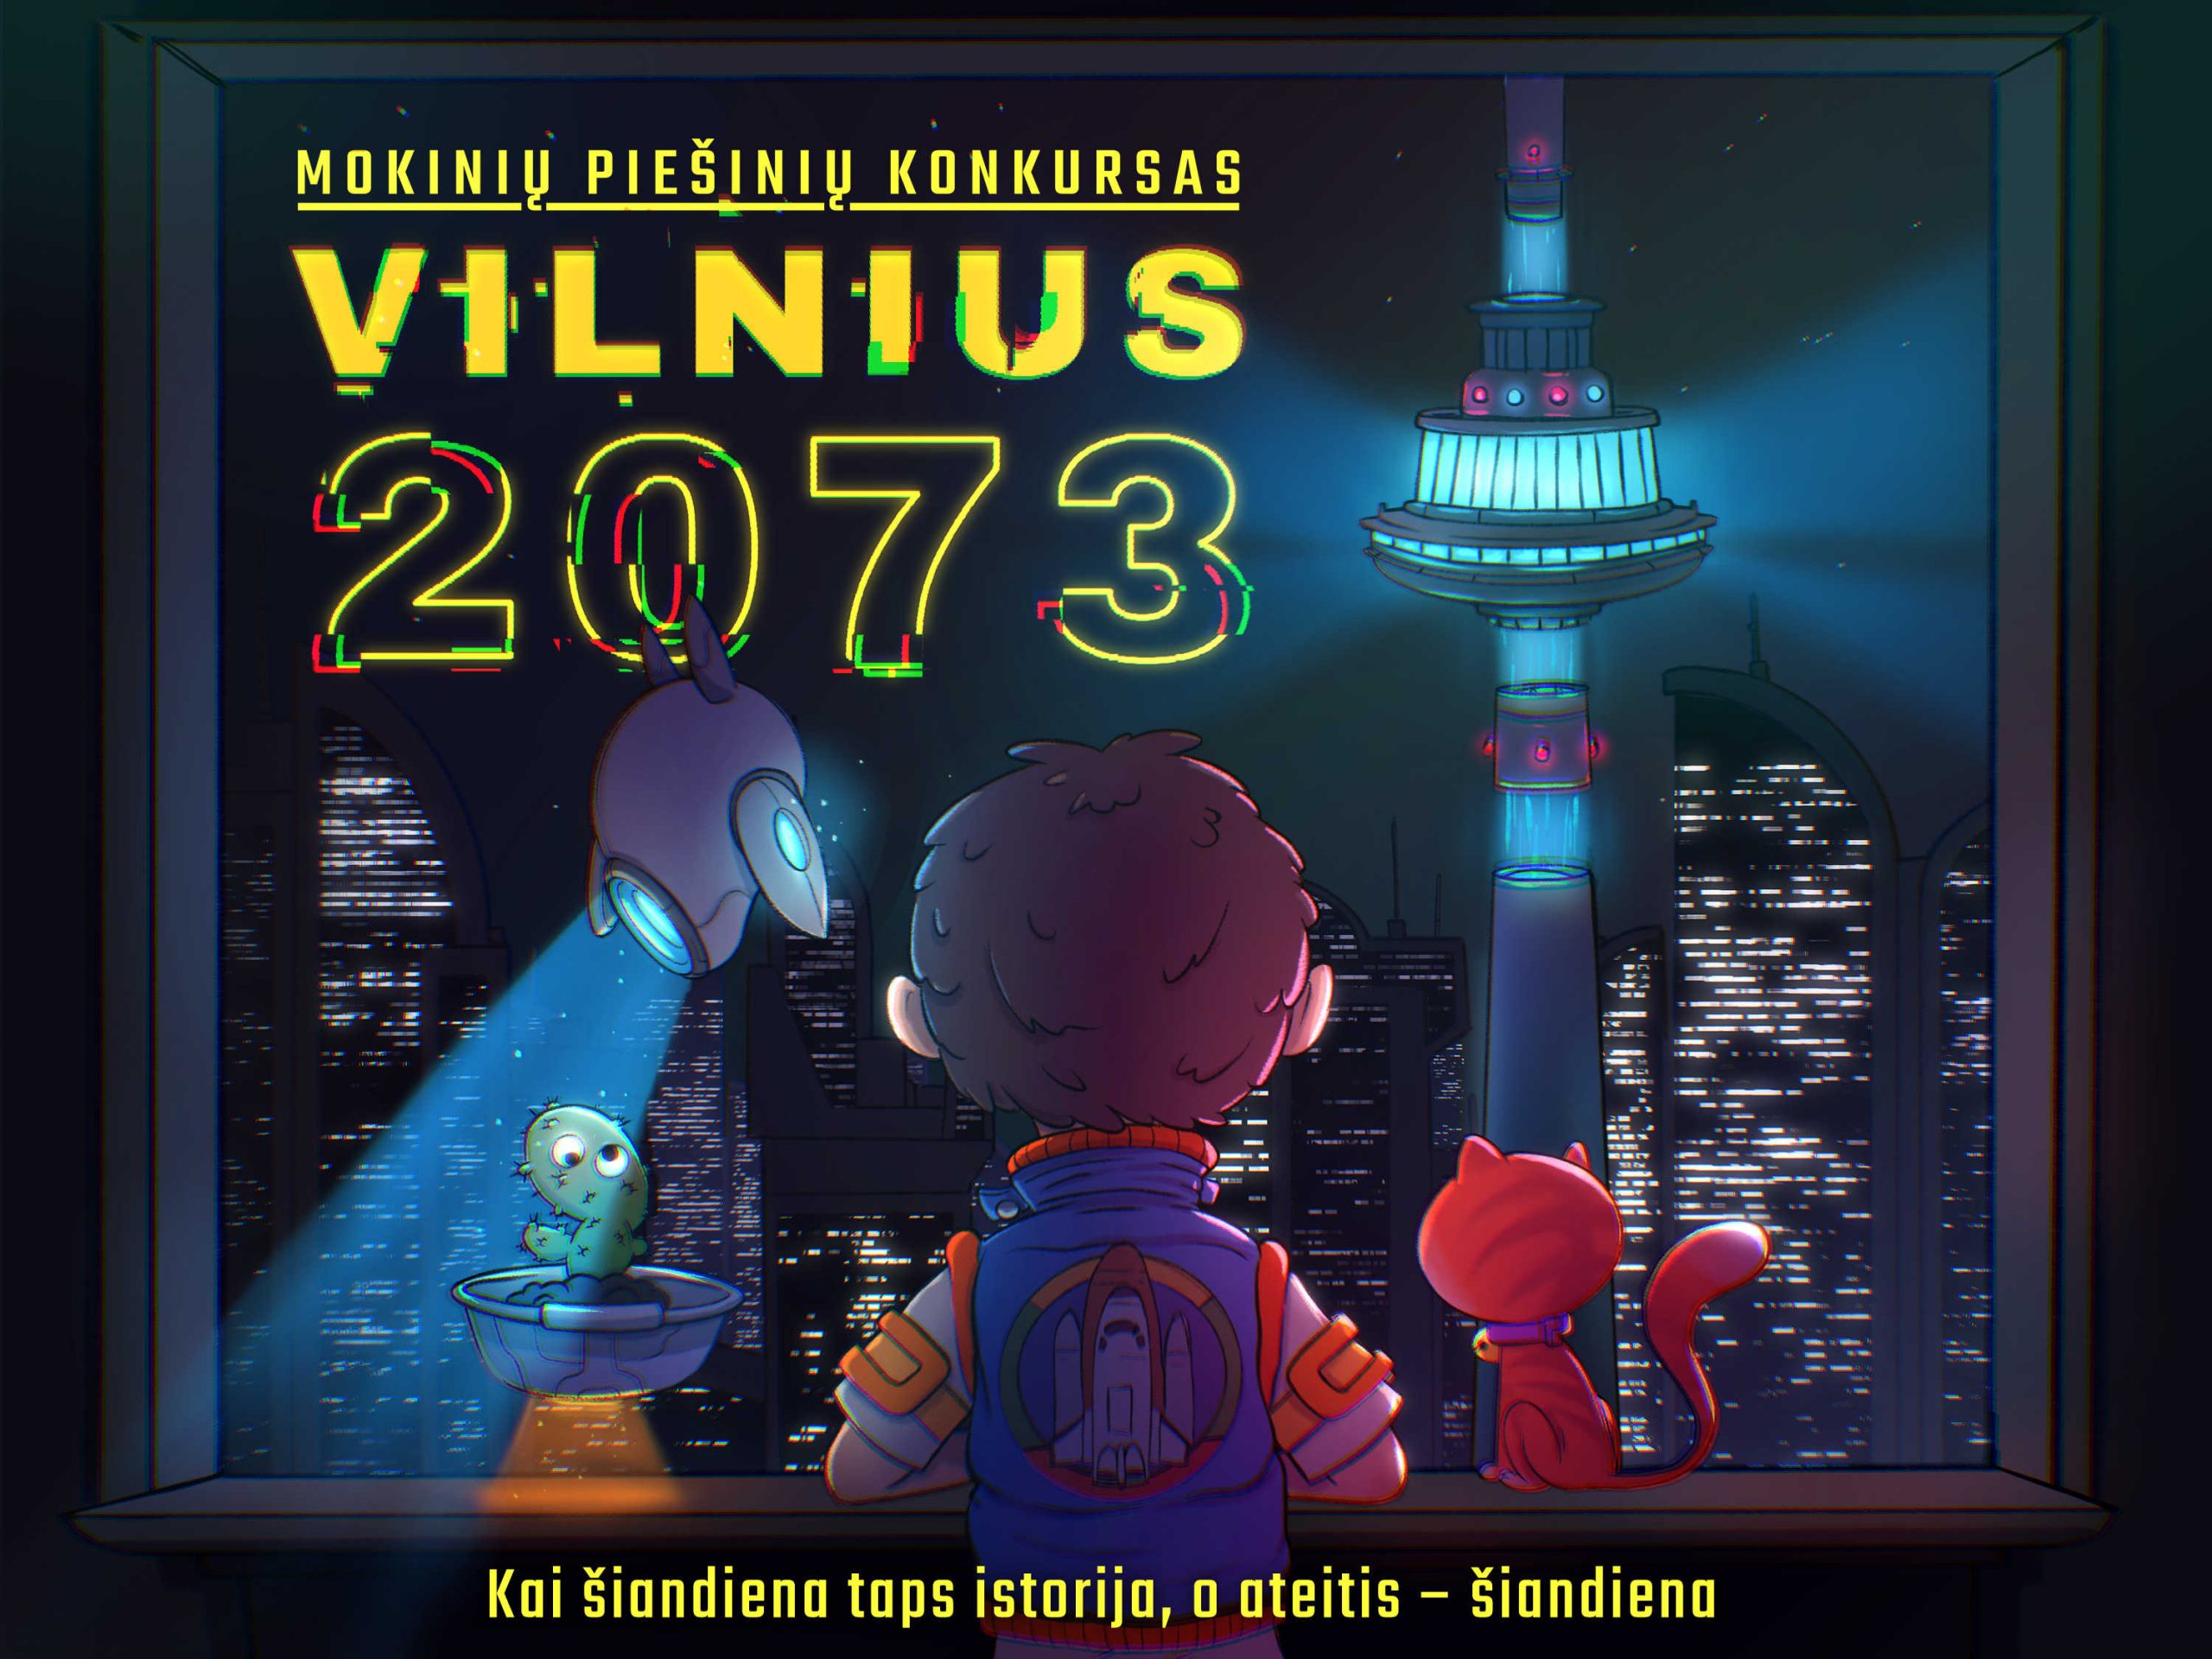 Mokiniu Piesiniu Konkursas Vilnius2073 Scaled